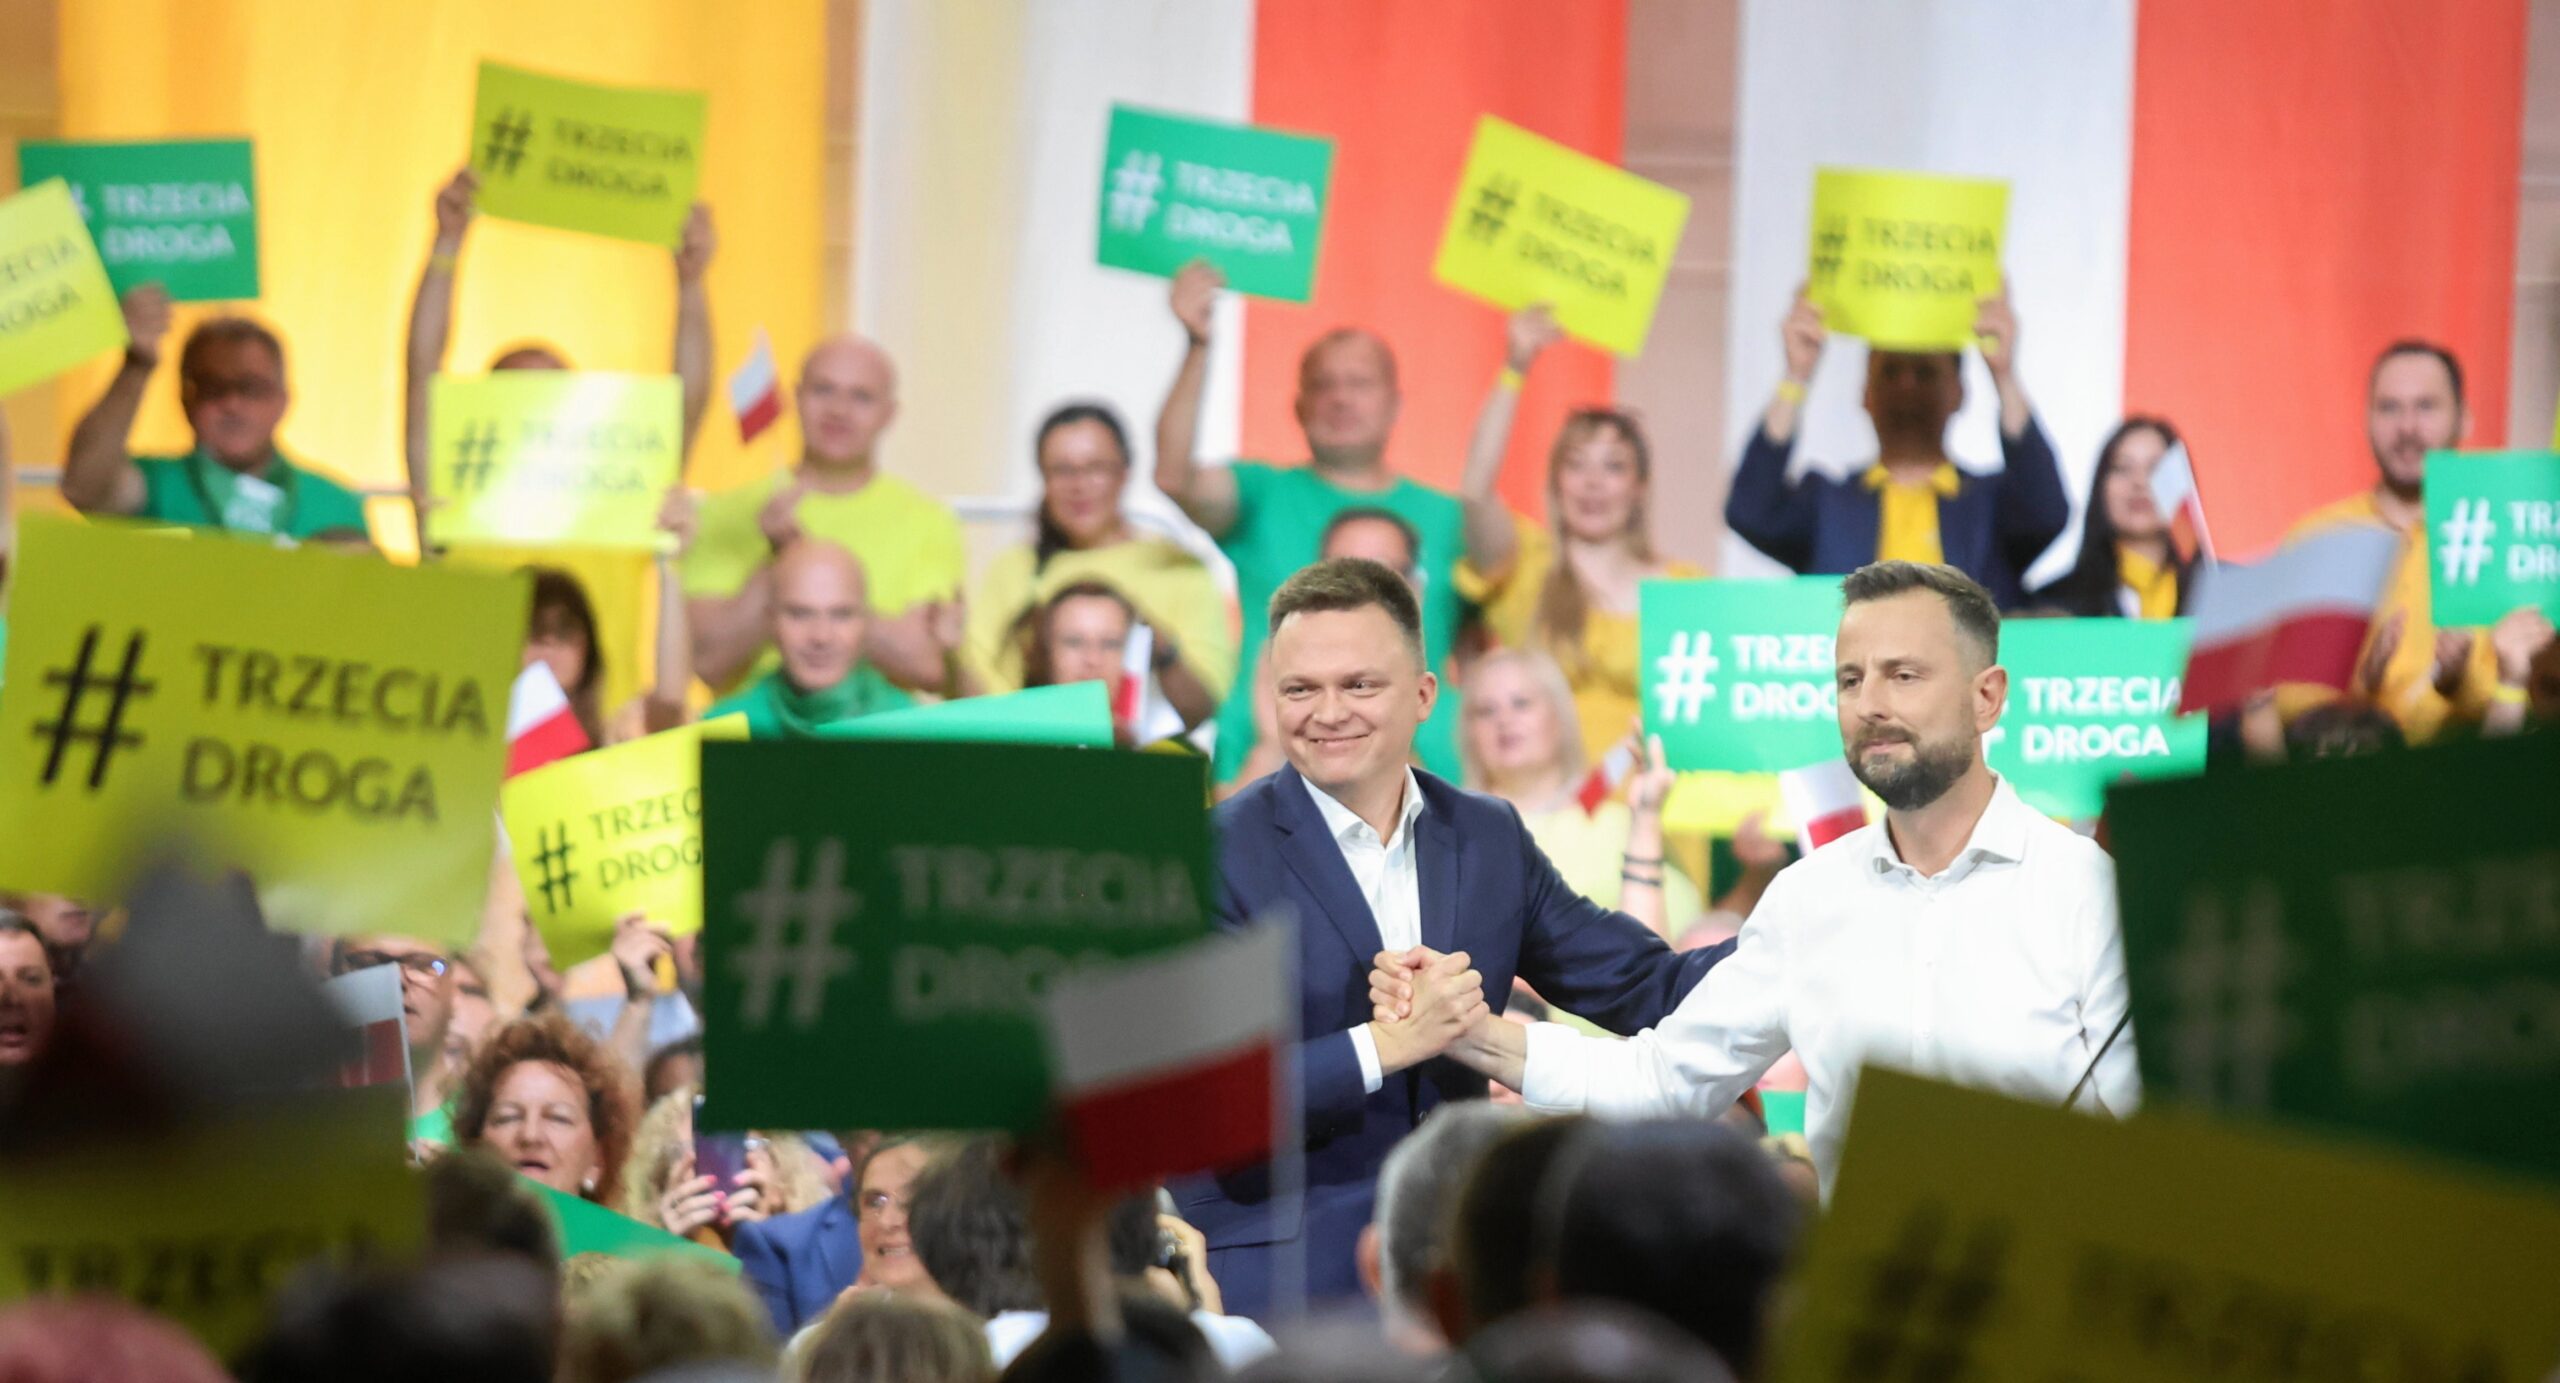 Opozycyjna koalicja „Trzecia Droga” jest na rozdrożu przed wyborami w Polsce